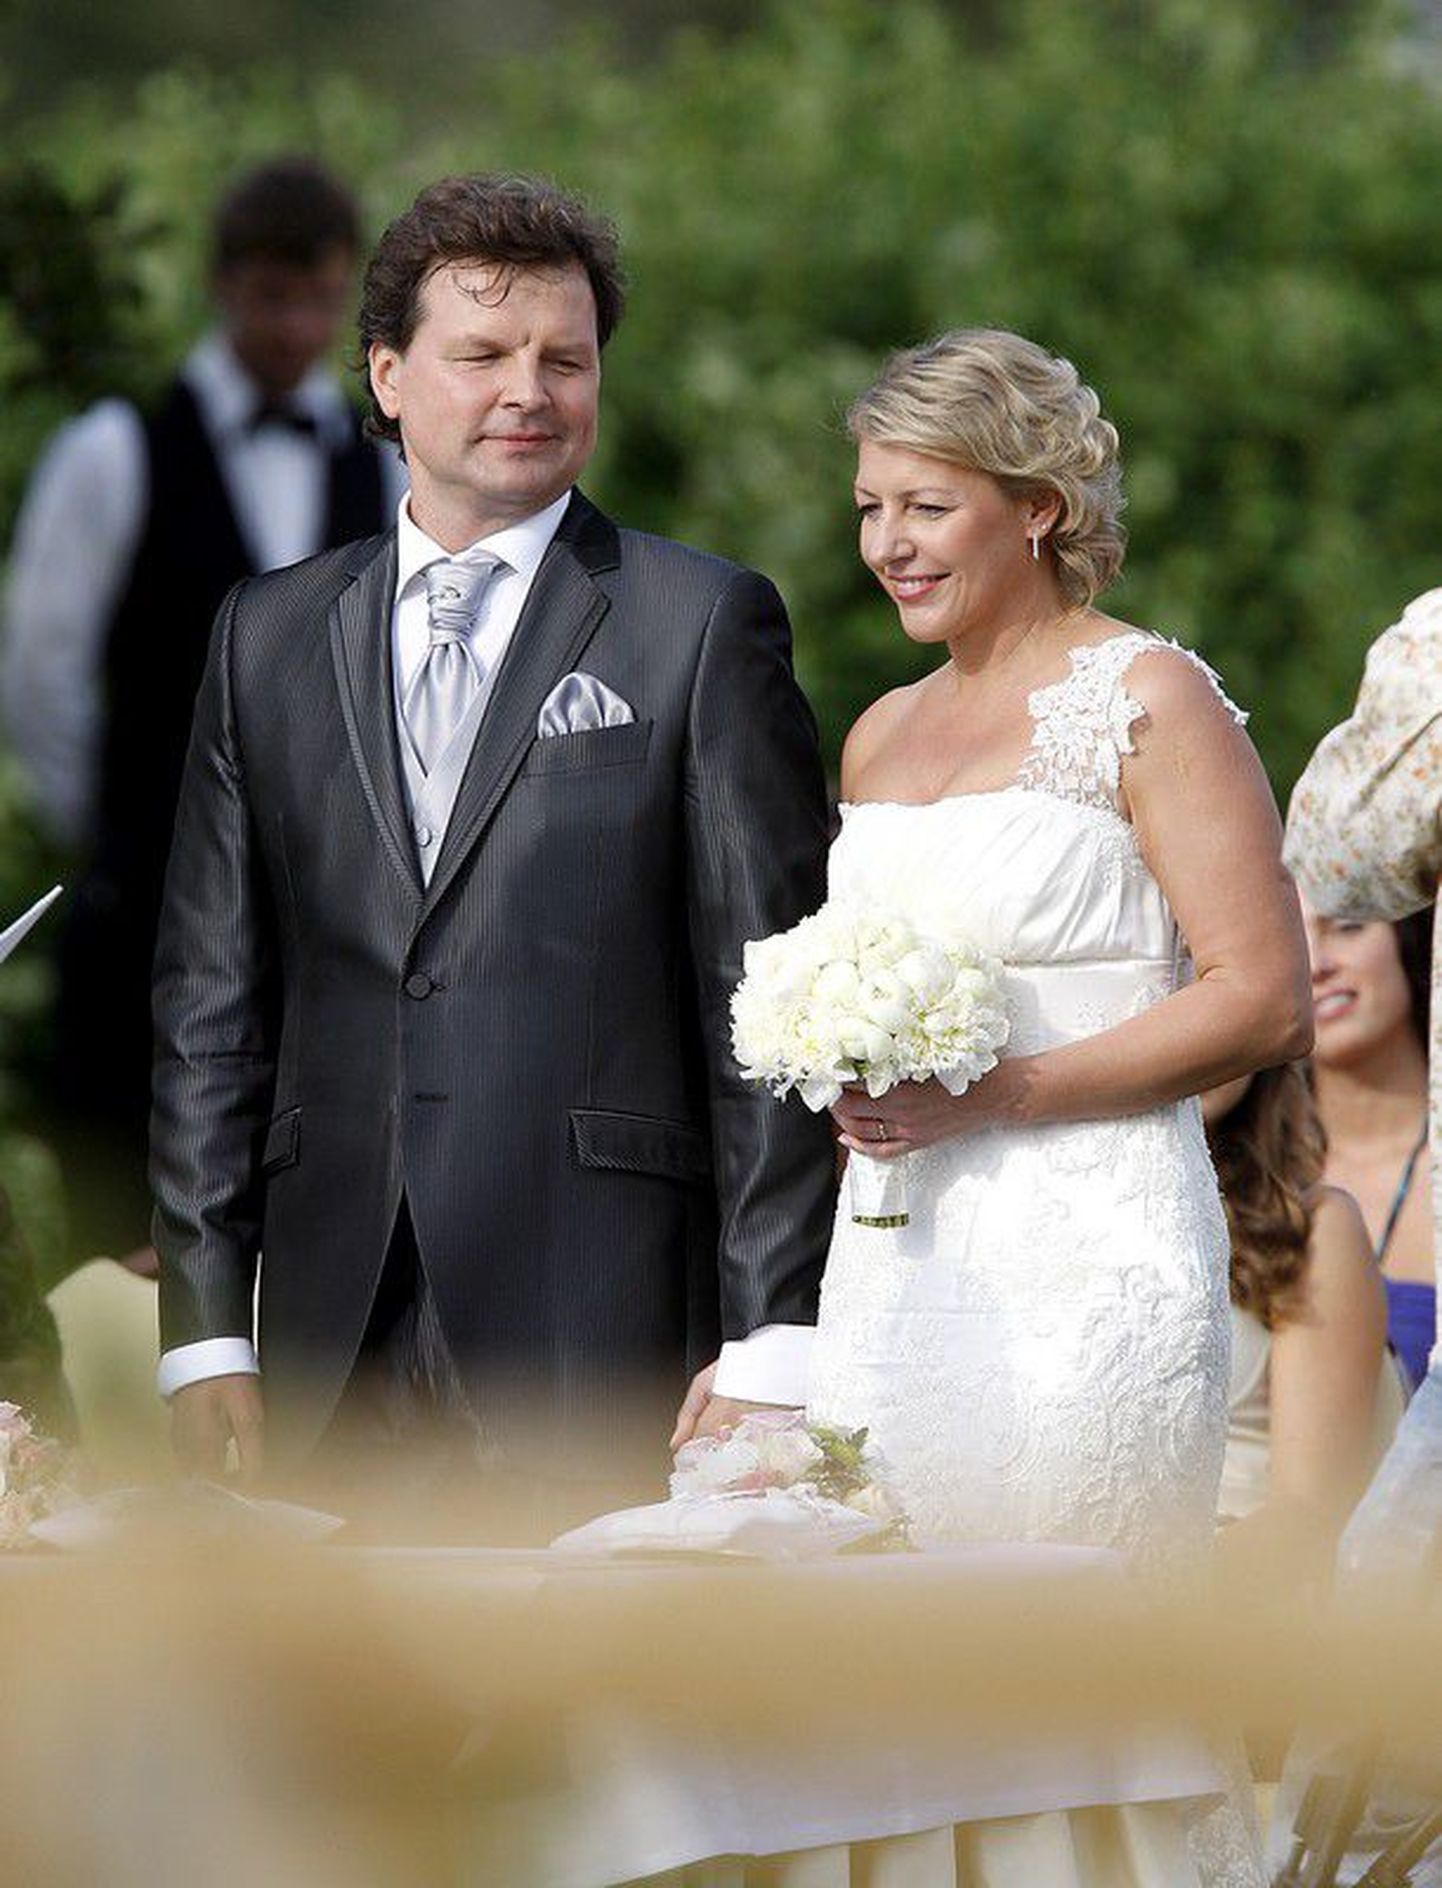 30 июля 2010 года Вилья Сависаар и Таймо Тоомаст сочетались законным браком.